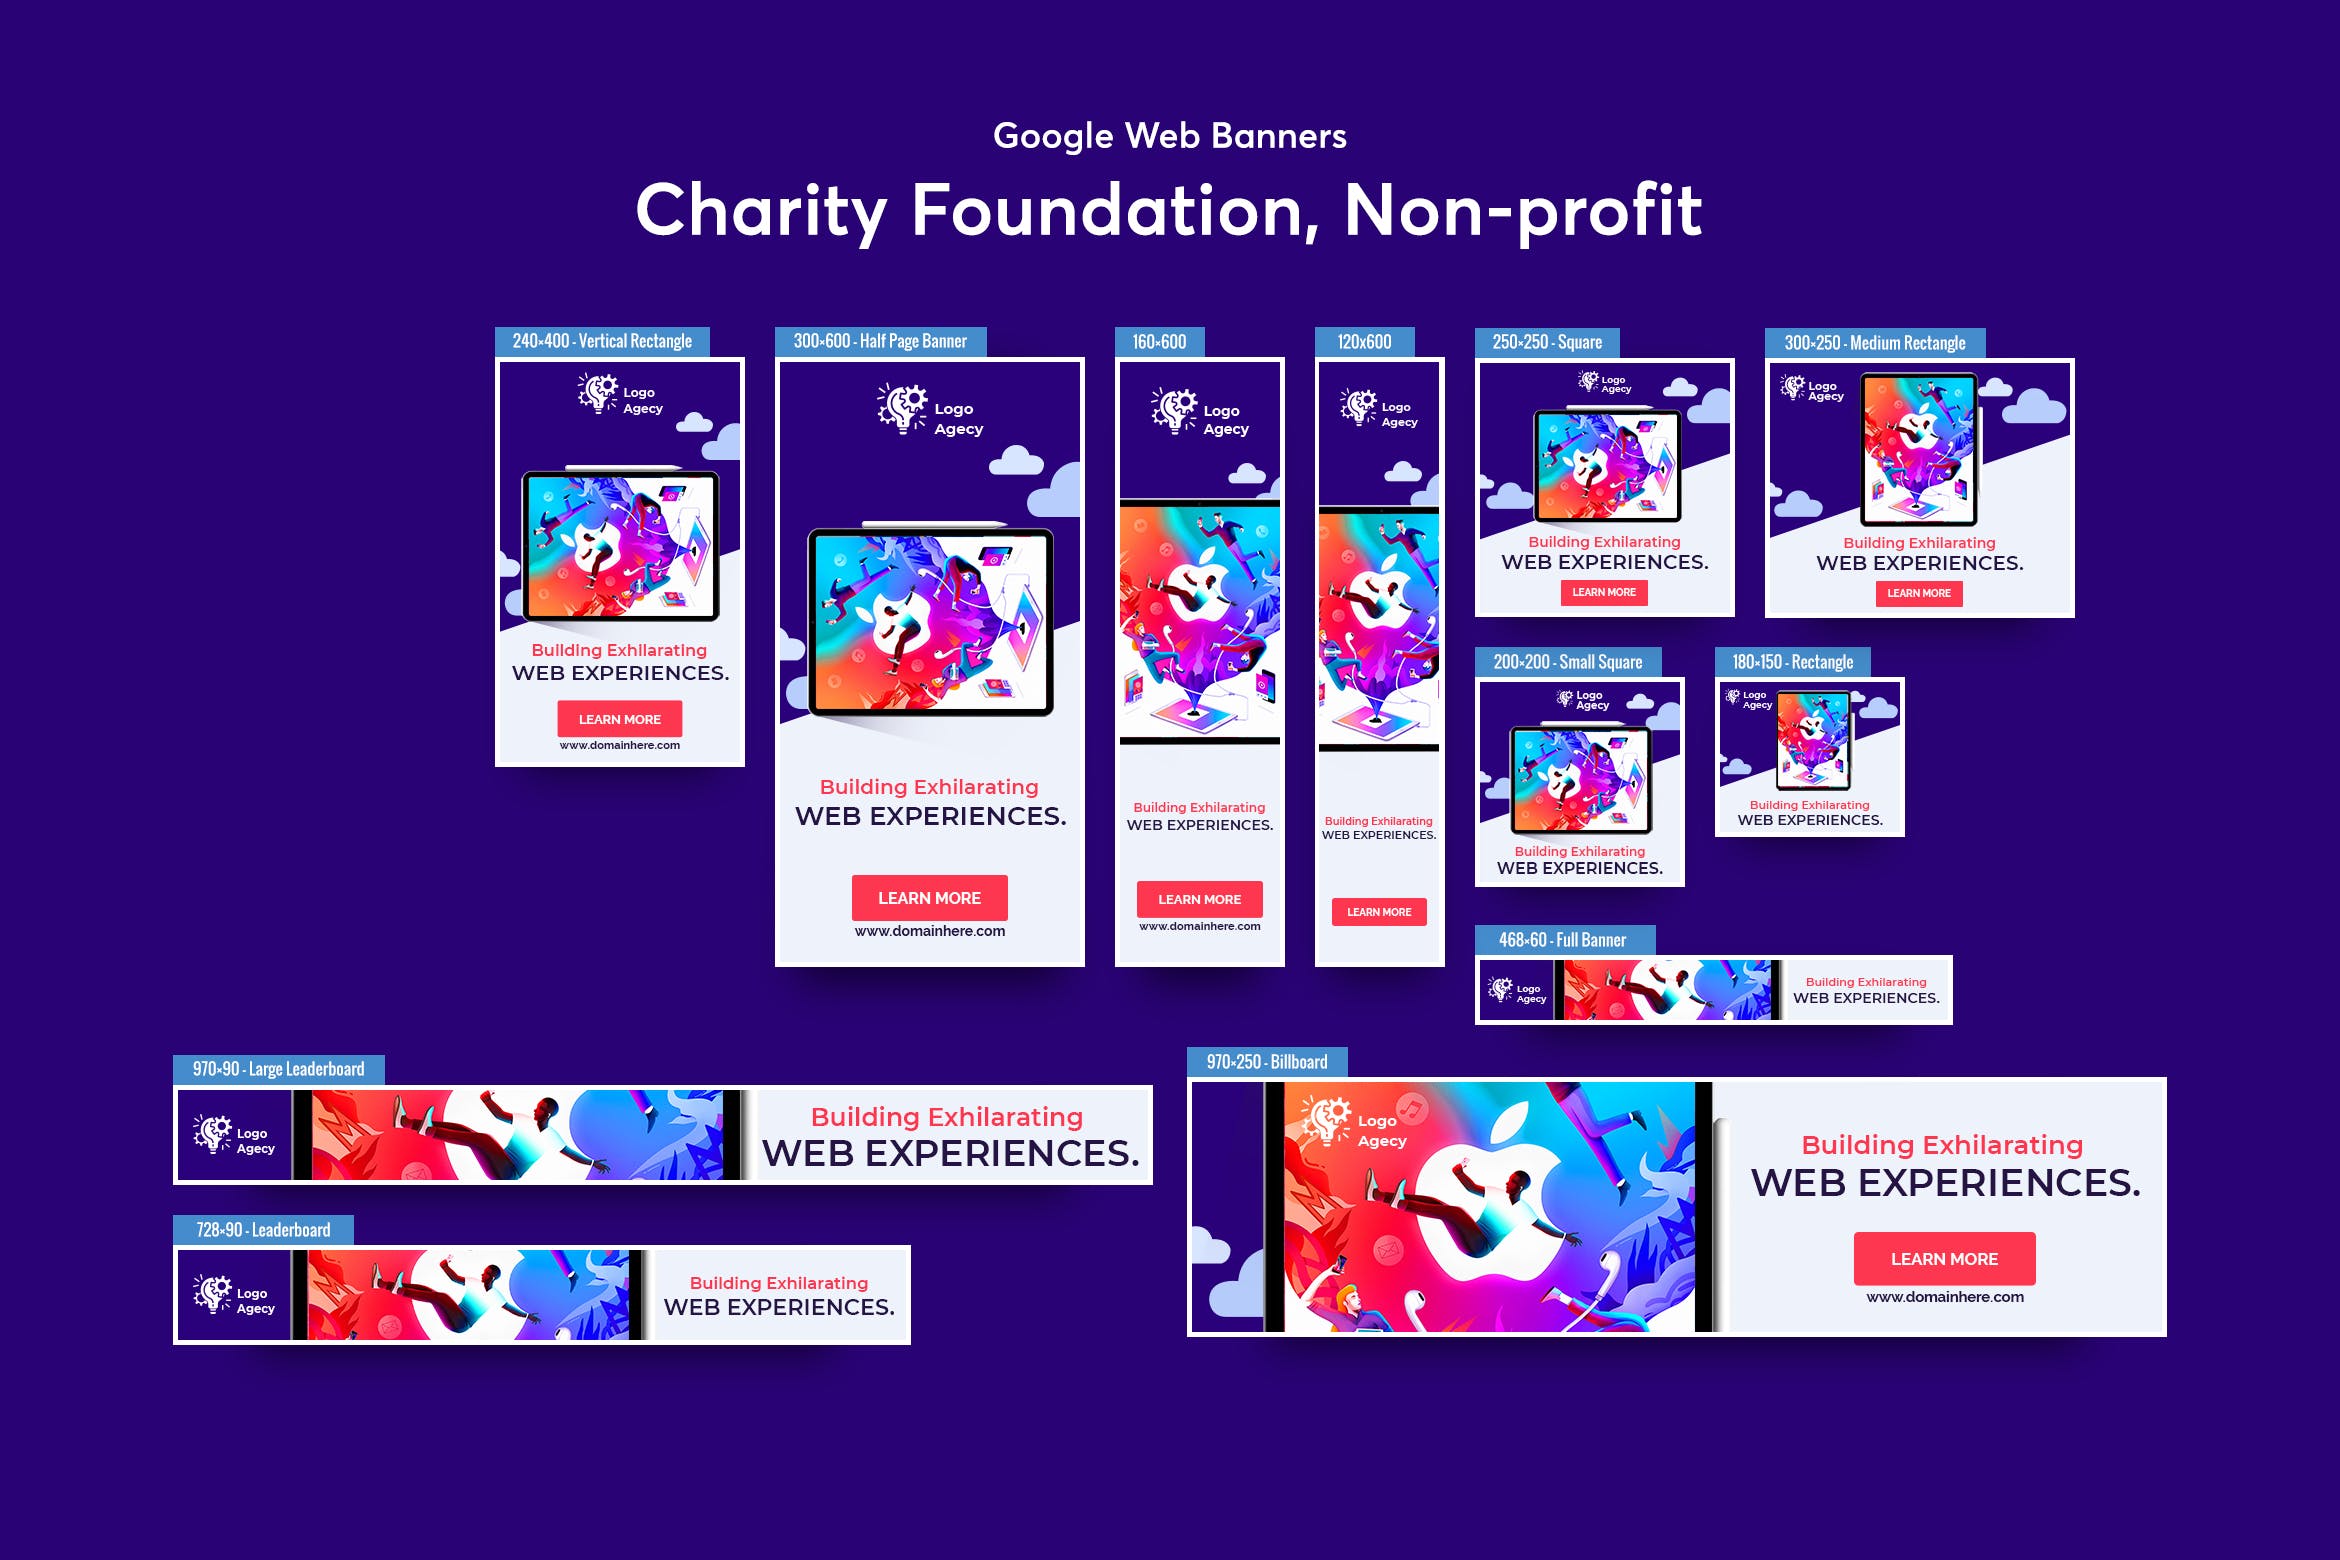 慈善基金会/非营利类型Banner横幅素材库精选广告模板v1 Charity Foundation, Non-profit Banners Ad插图